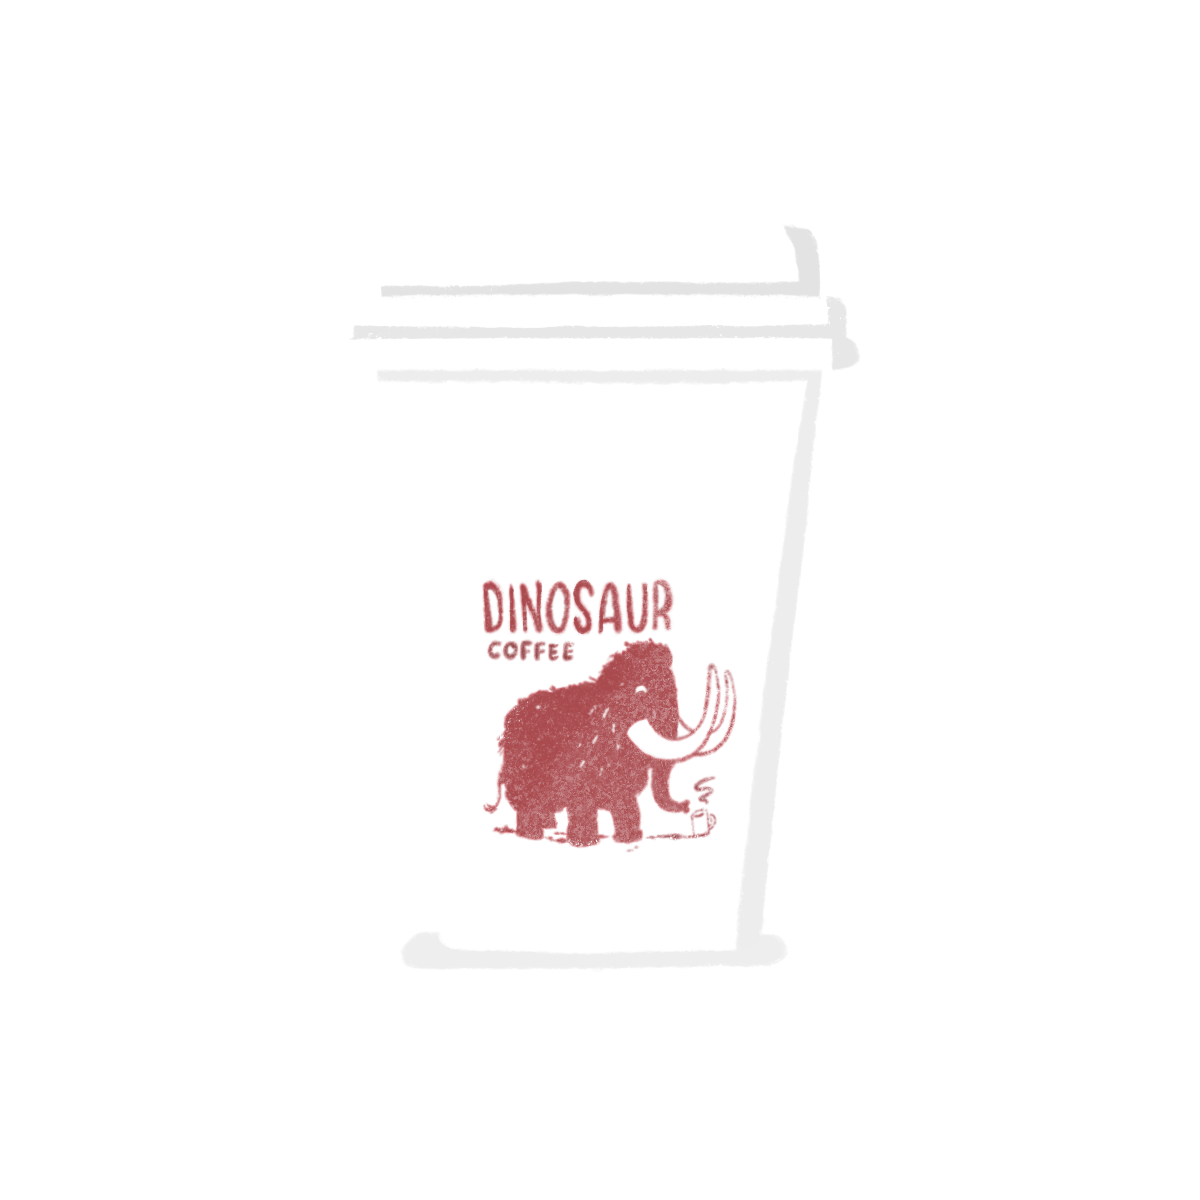 Dinosaur Coffee coffee cup